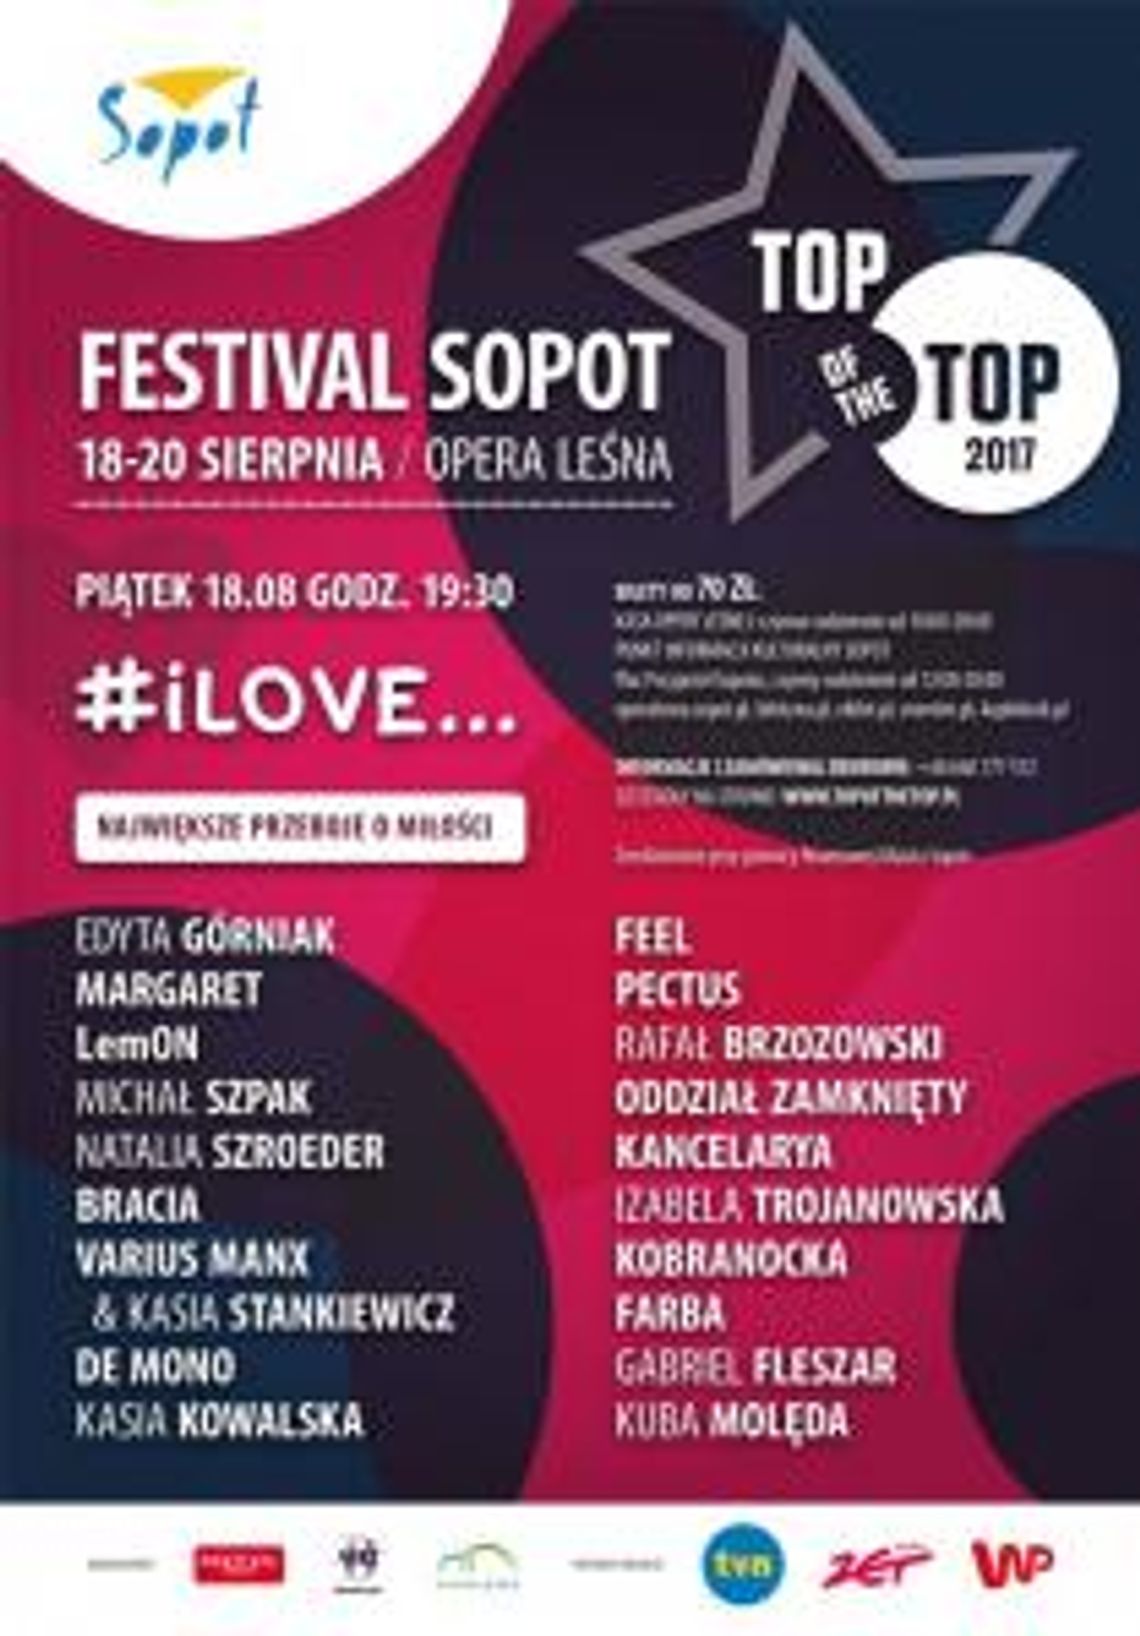 Top of the Top Festival Sopot 2017 „#iLove… Największe przeboje o miłości”.